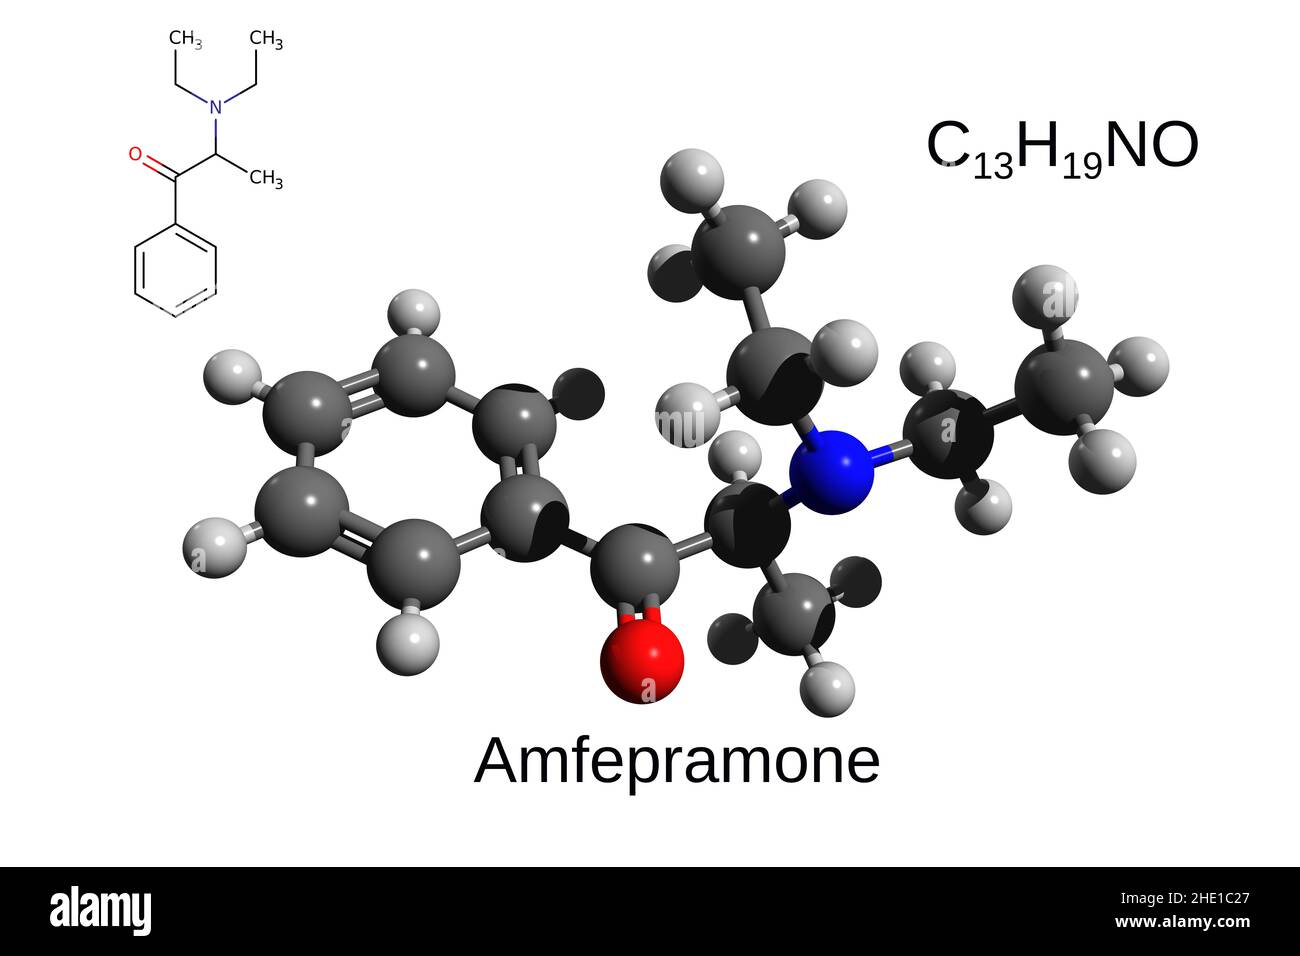 Formula chimica, formula strutturale e modello a 3D sfere del farmaco stimolante amfepramone, fondo bianco Foto Stock